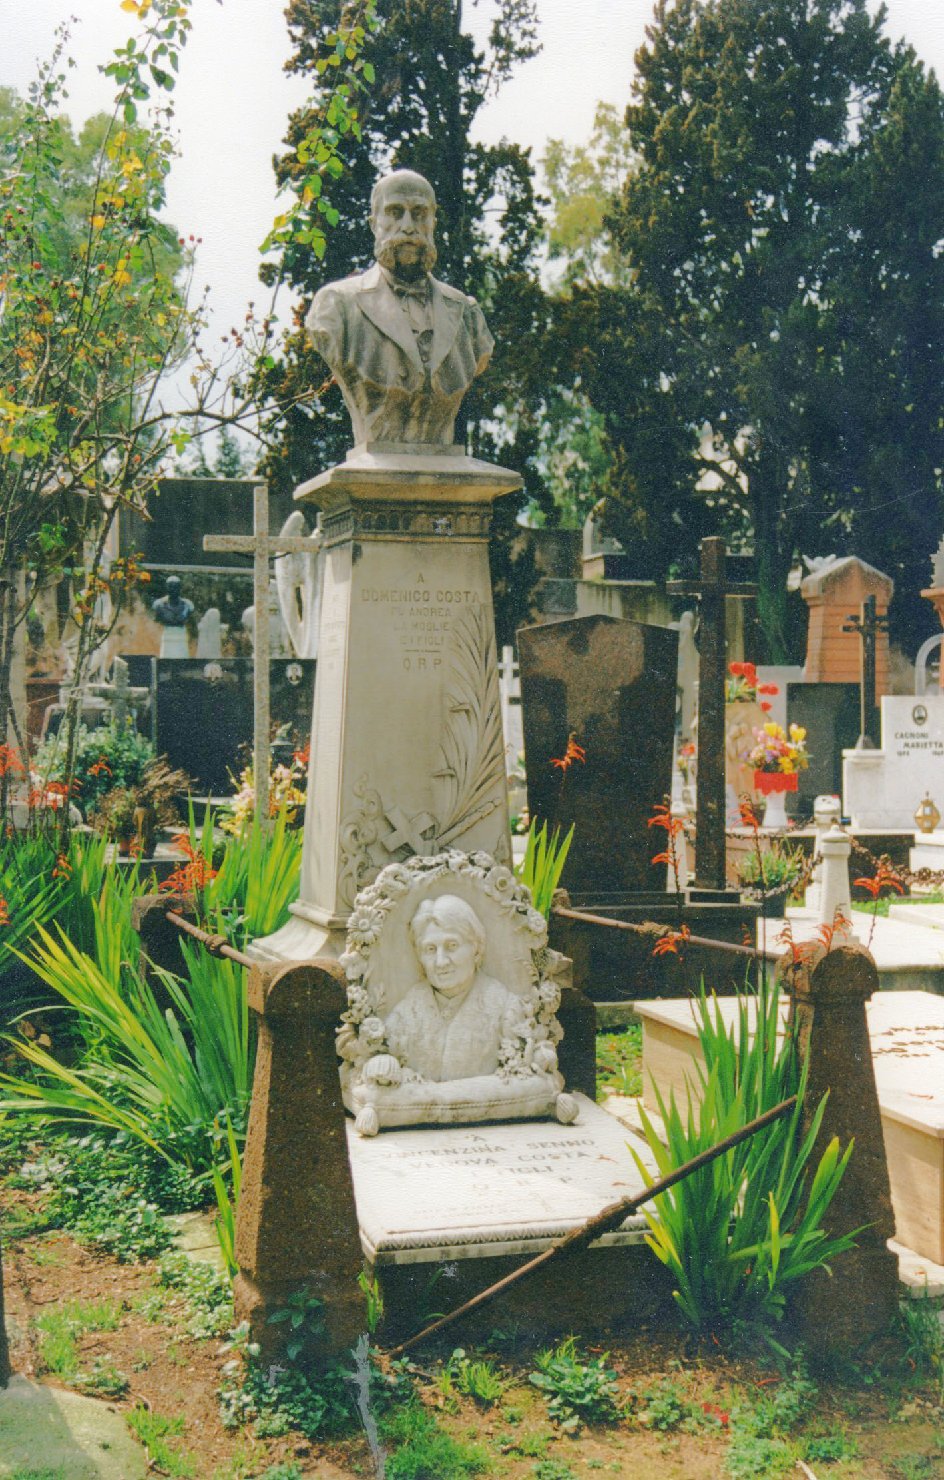 Ritratti di domenico e vincenzina costa, busto ritratto d'uomo/ ritratto di donna (monumento funebre)